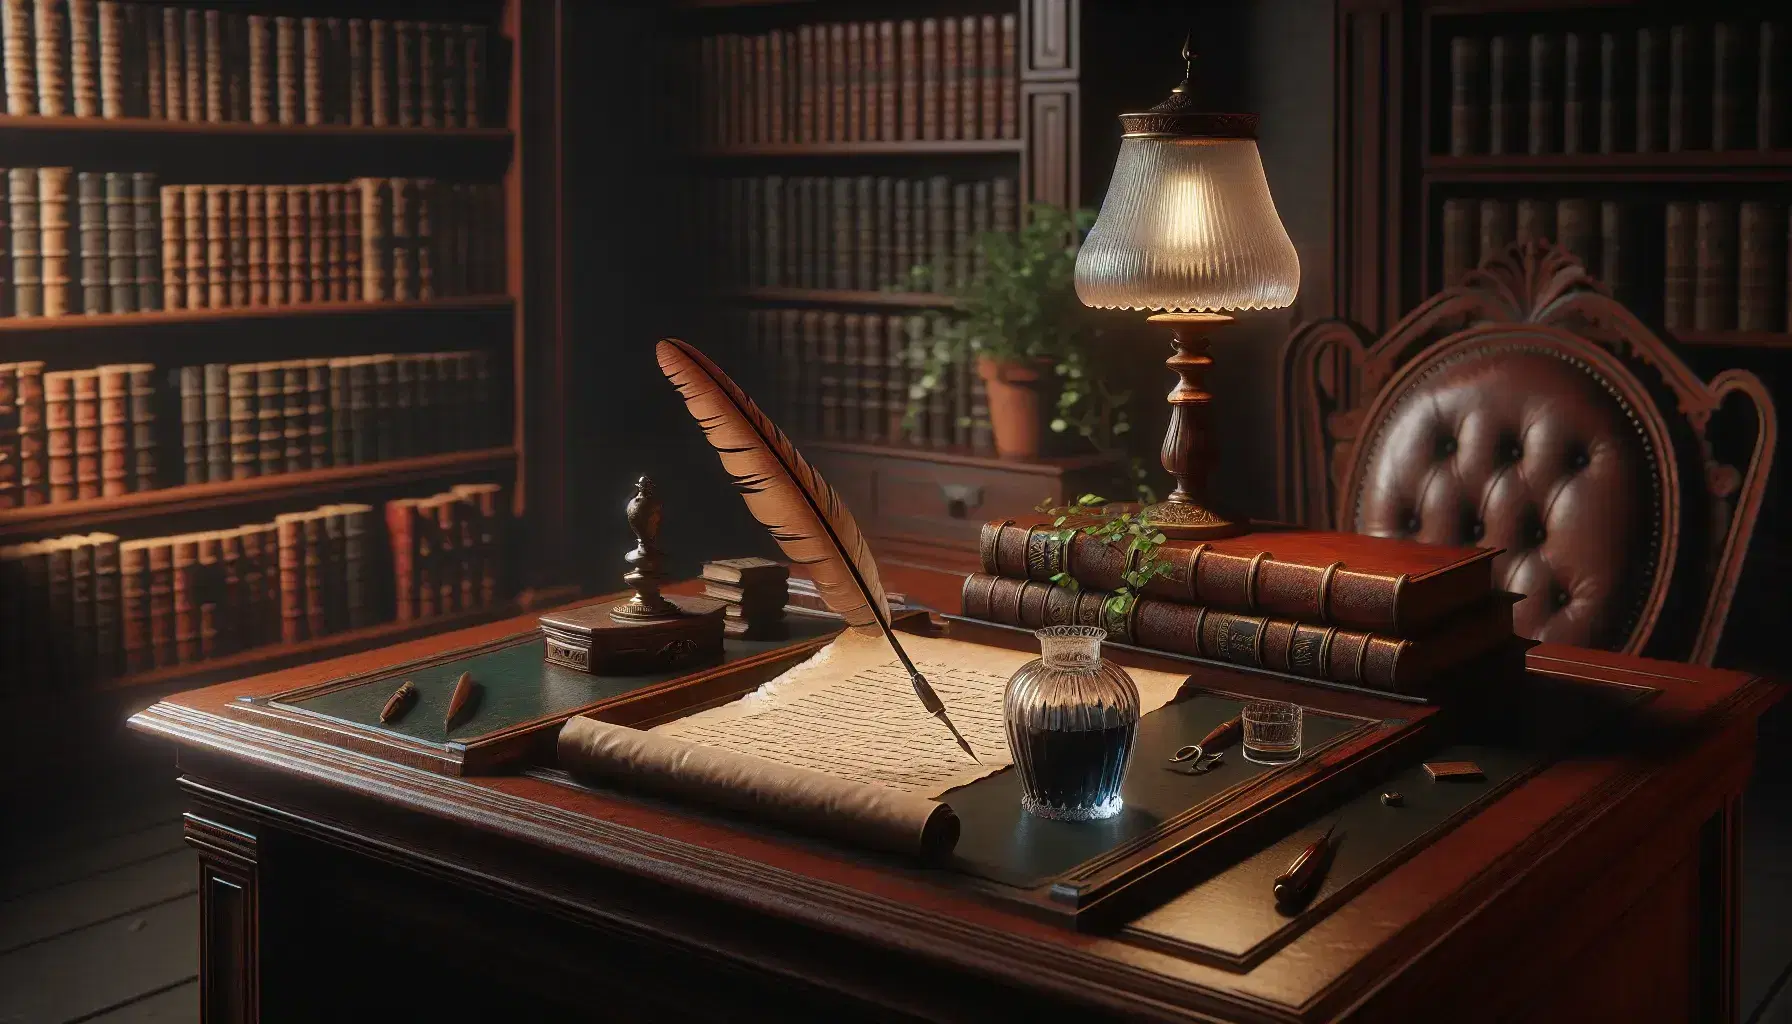 Scena di biblioteca antica con scrivania in legno scuro, calamaio con penna d'oca, pergamena e scaffali di libri rilegati, luce soffusa e pianta verde.